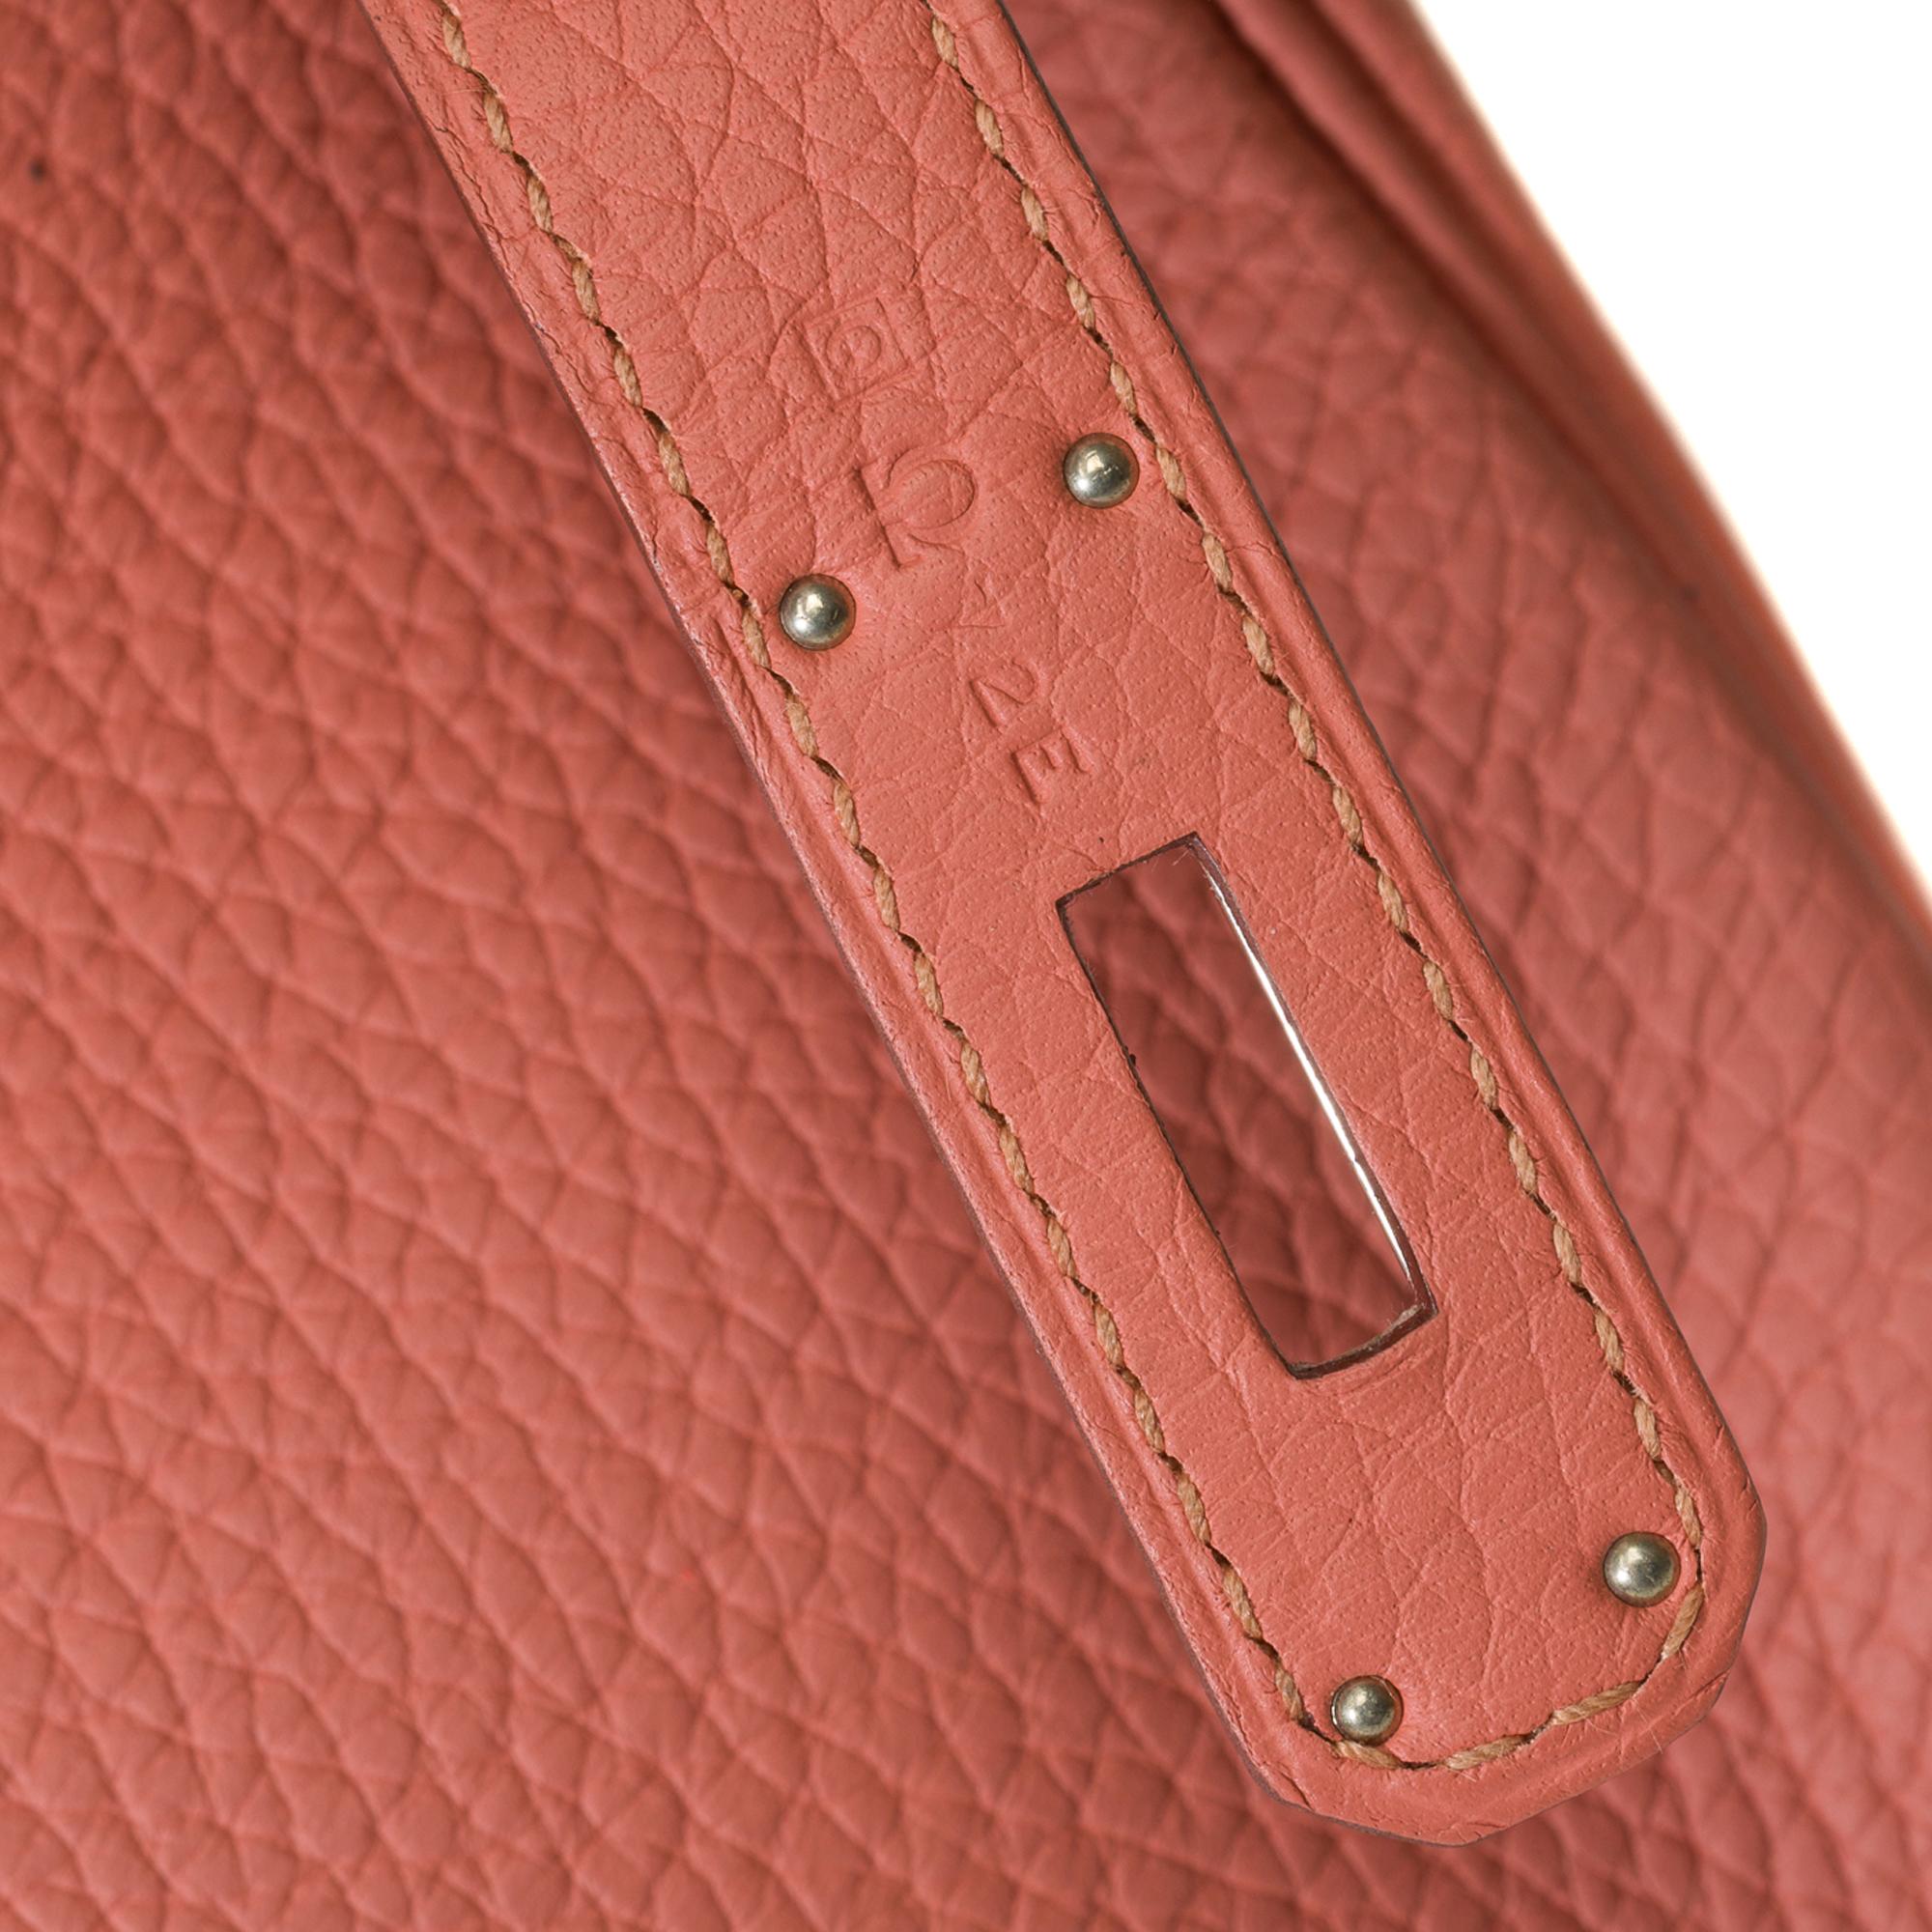 Stunning Hermes Birkin 30 handbag in Rose Tea Togo leather, SHW For Sale 3